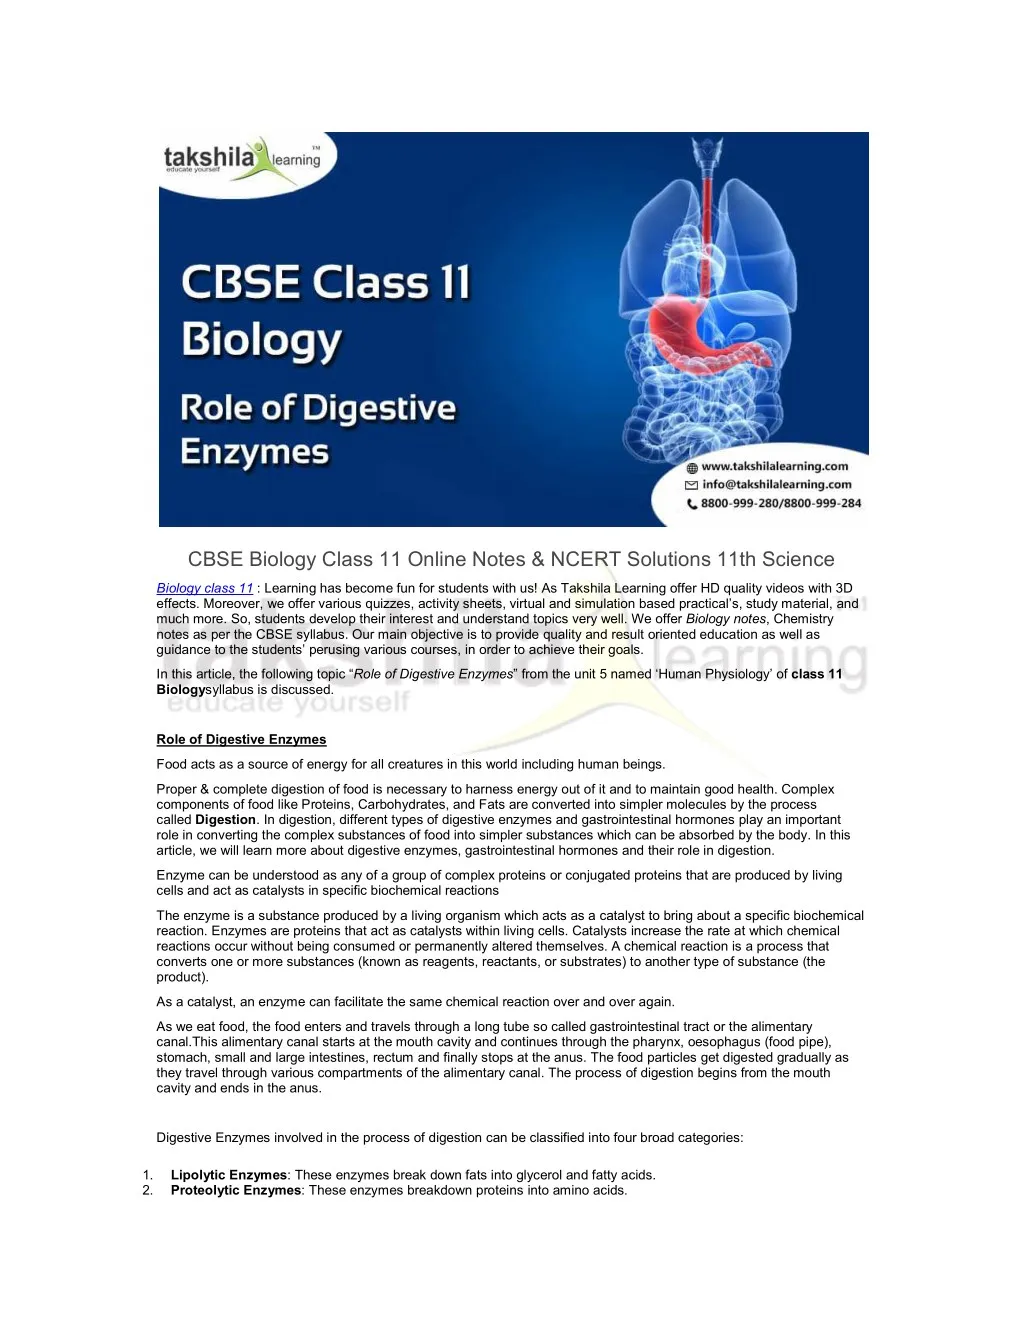 cbse biology class 11 online notes ncert